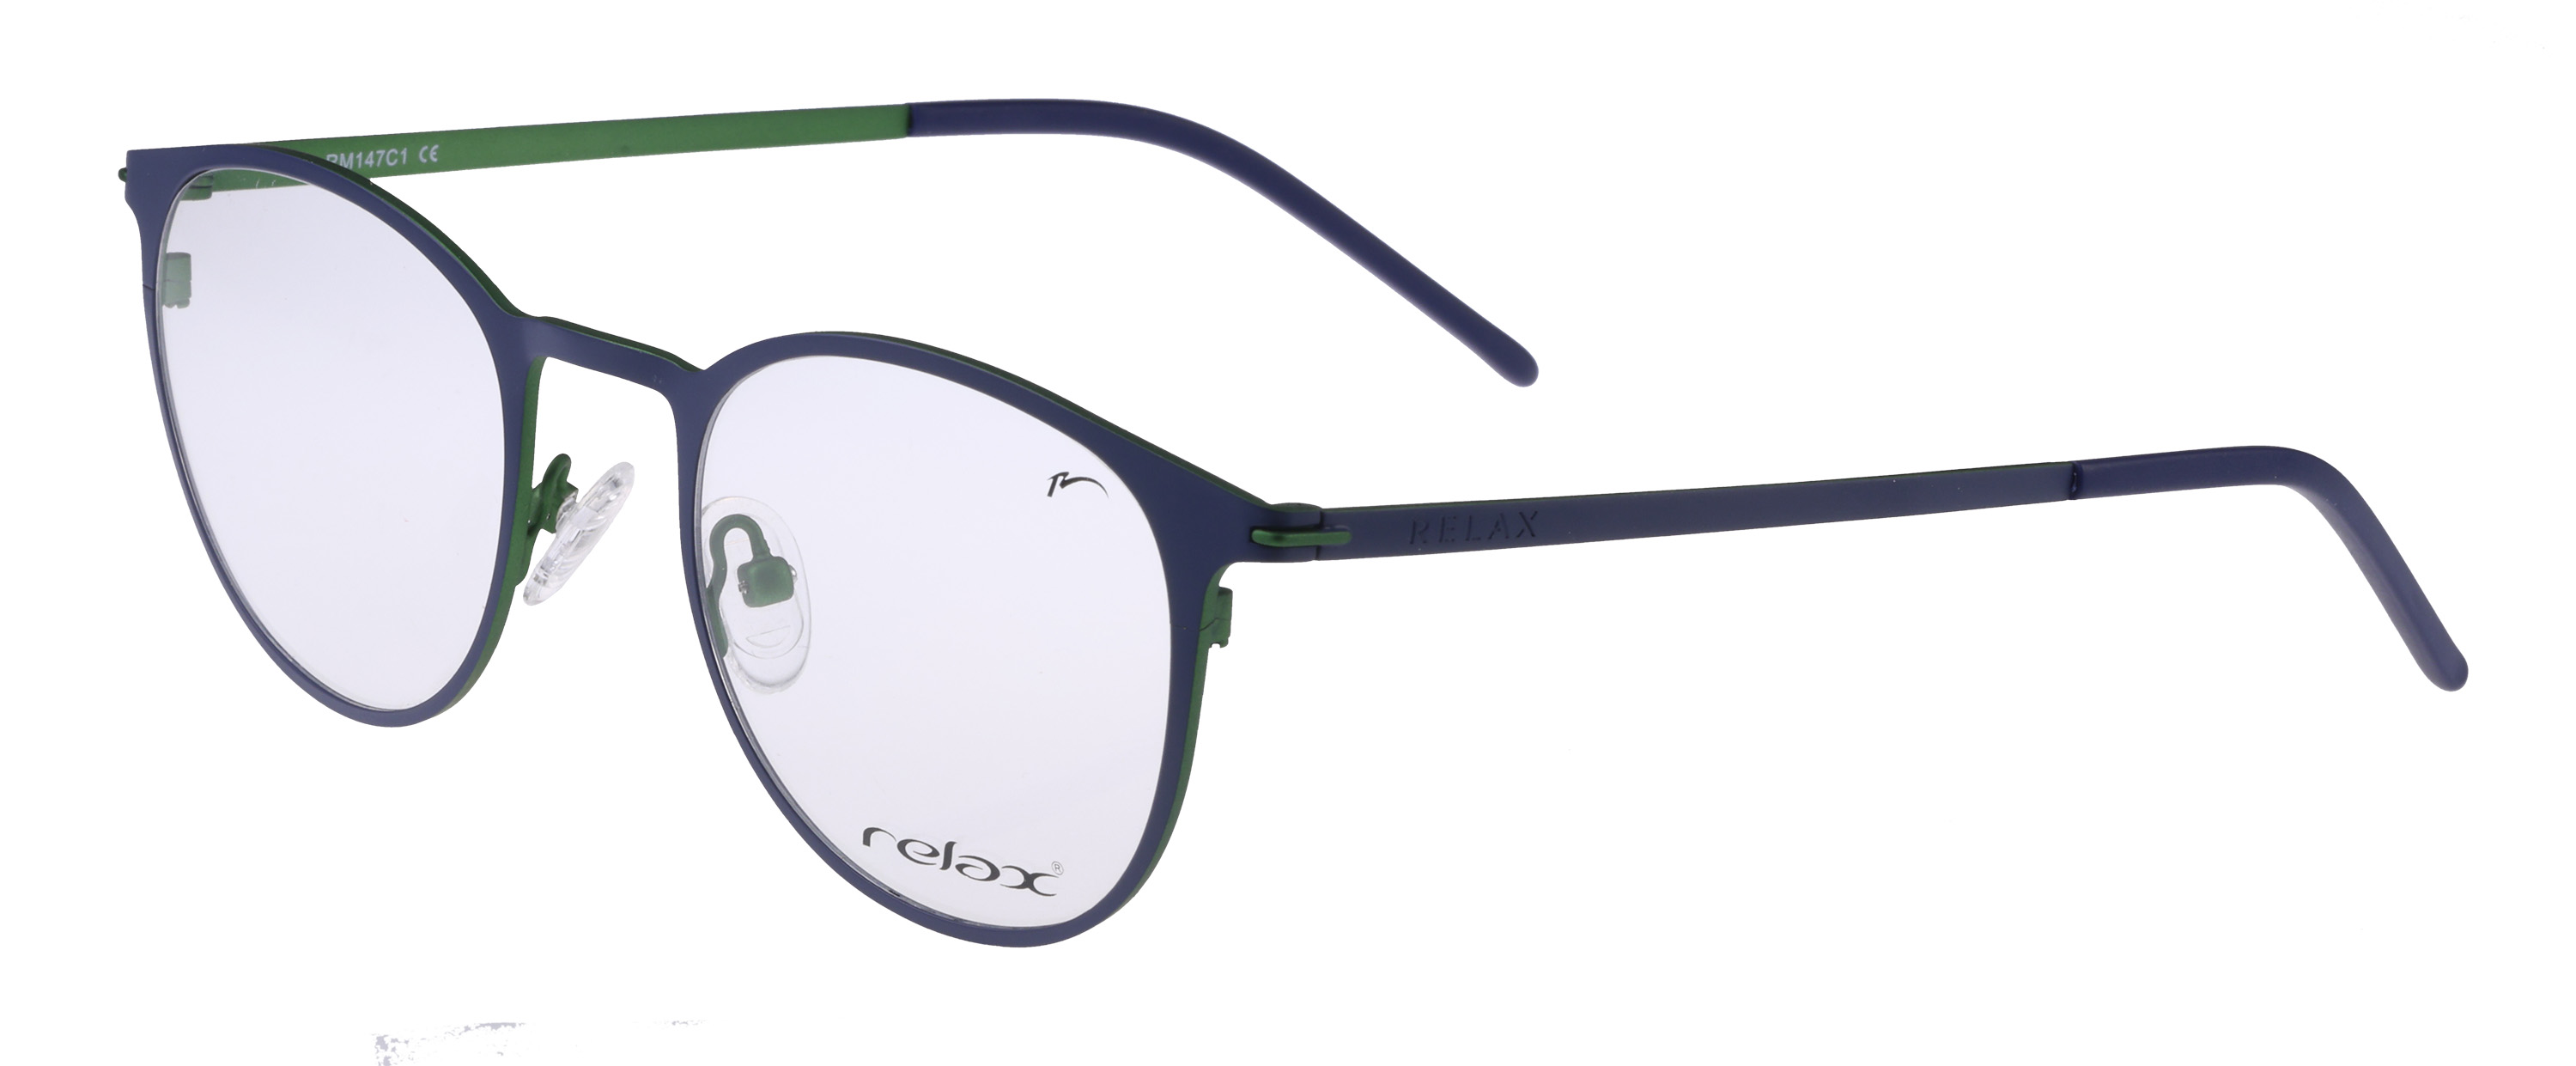 Optical frames Relax Pells  RM147C1